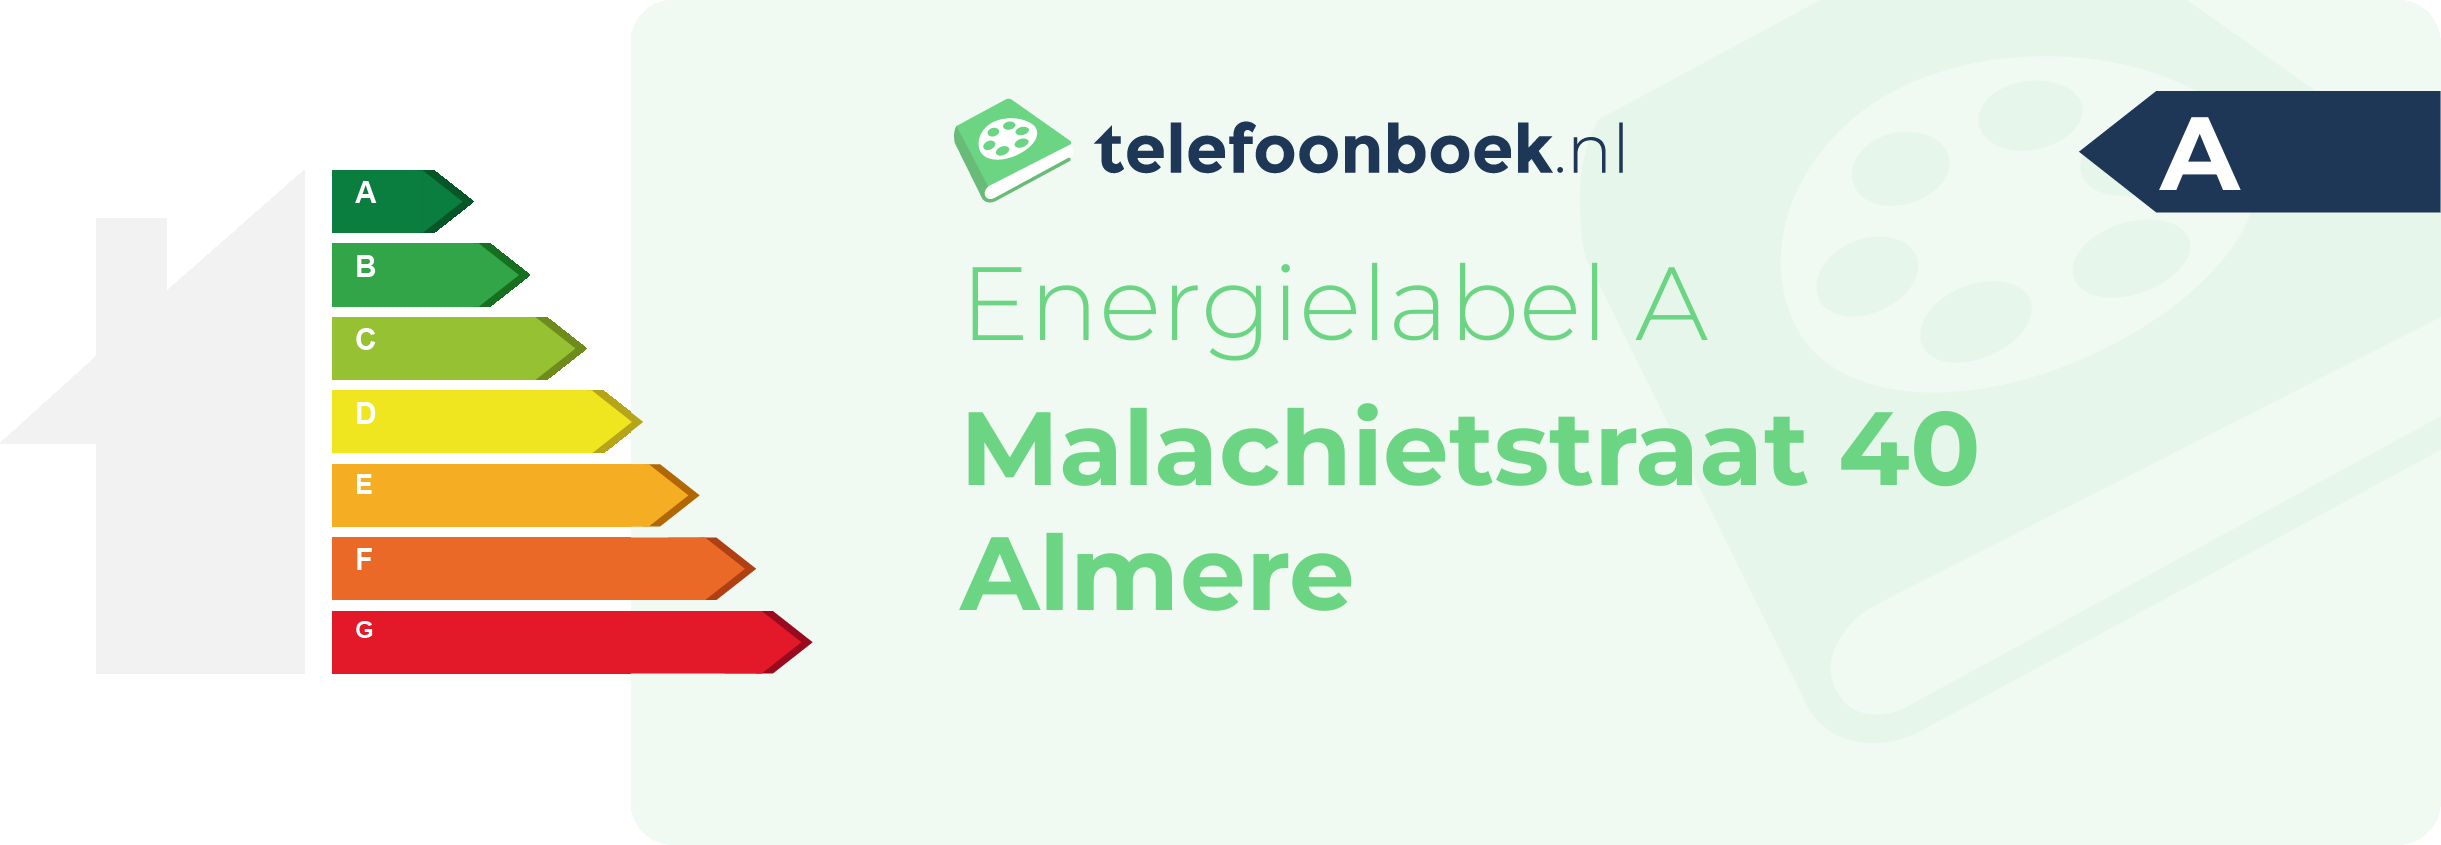 Energielabel Malachietstraat 40 Almere